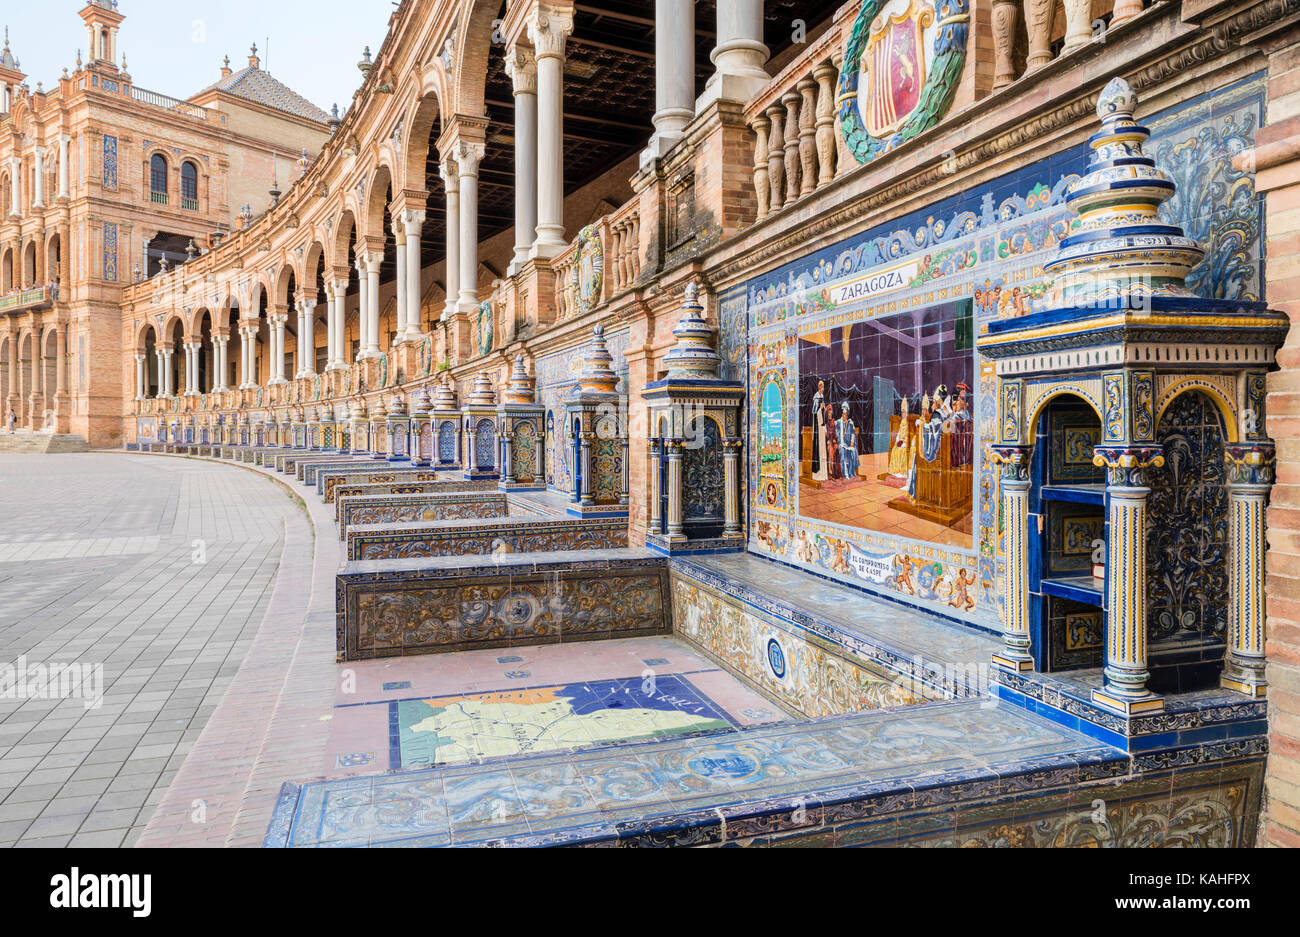 Tiles with the Allegorie von Zaragoza, Plaza de España, Sevilla, Andalusien, Spanien Stock Photo